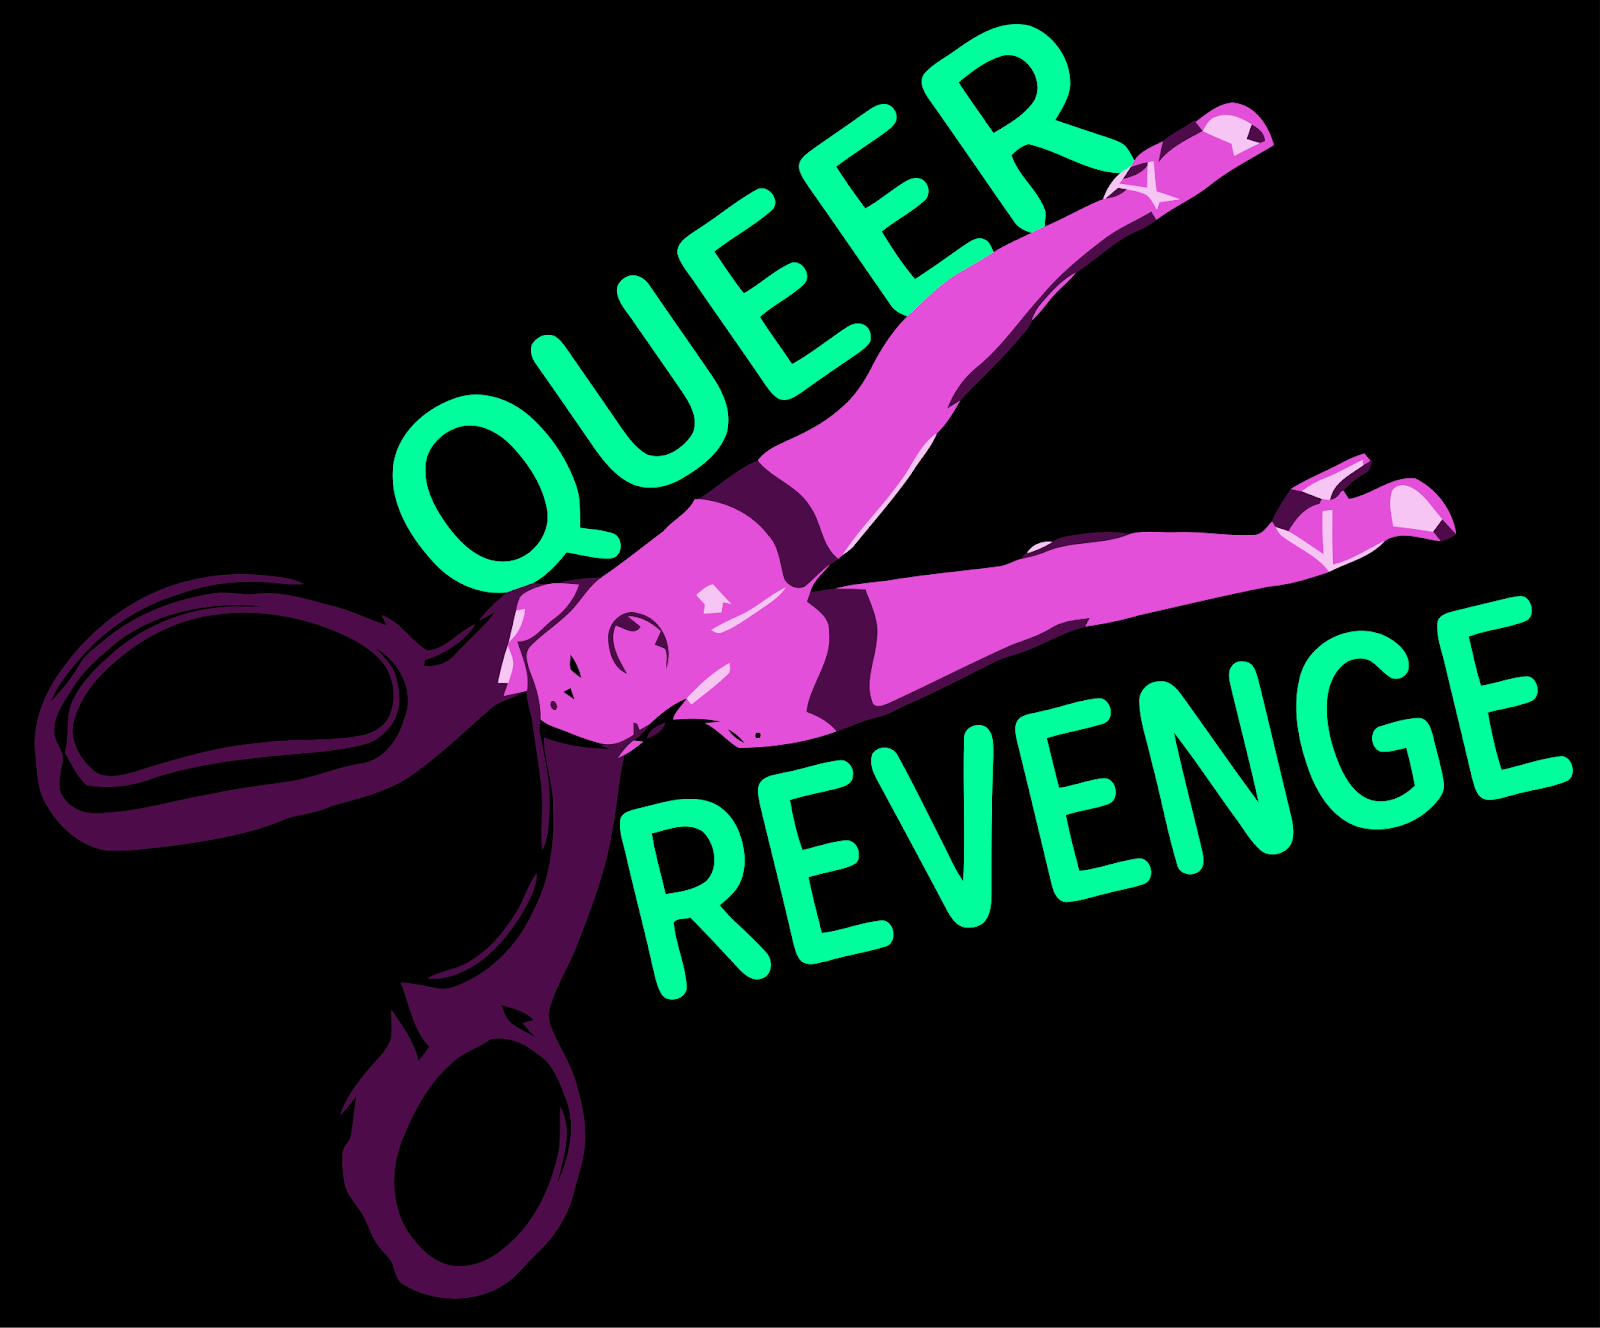 n-i-nova-ishtar-daggers-drawn-queer-revenge-1.png